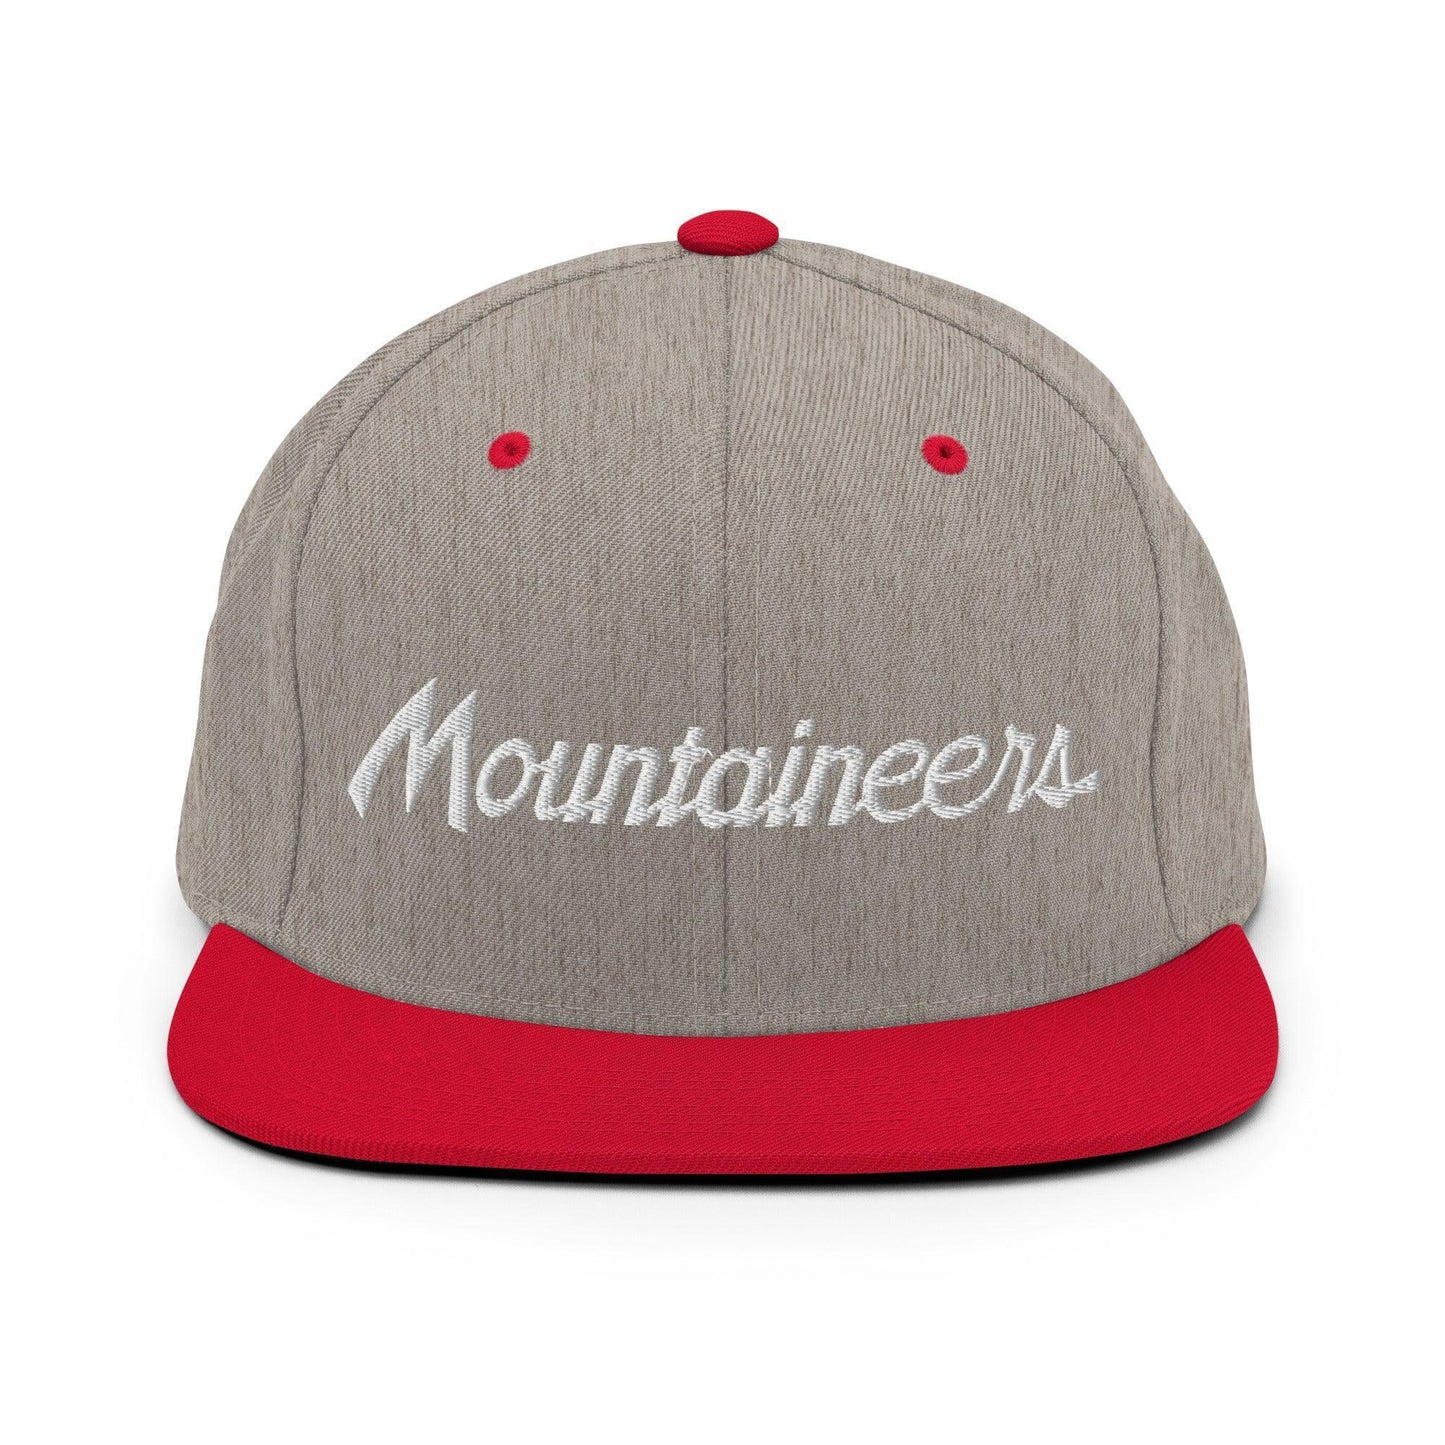 Mountaineers School Mascot Script Snapback Hat Heather Grey/ Red